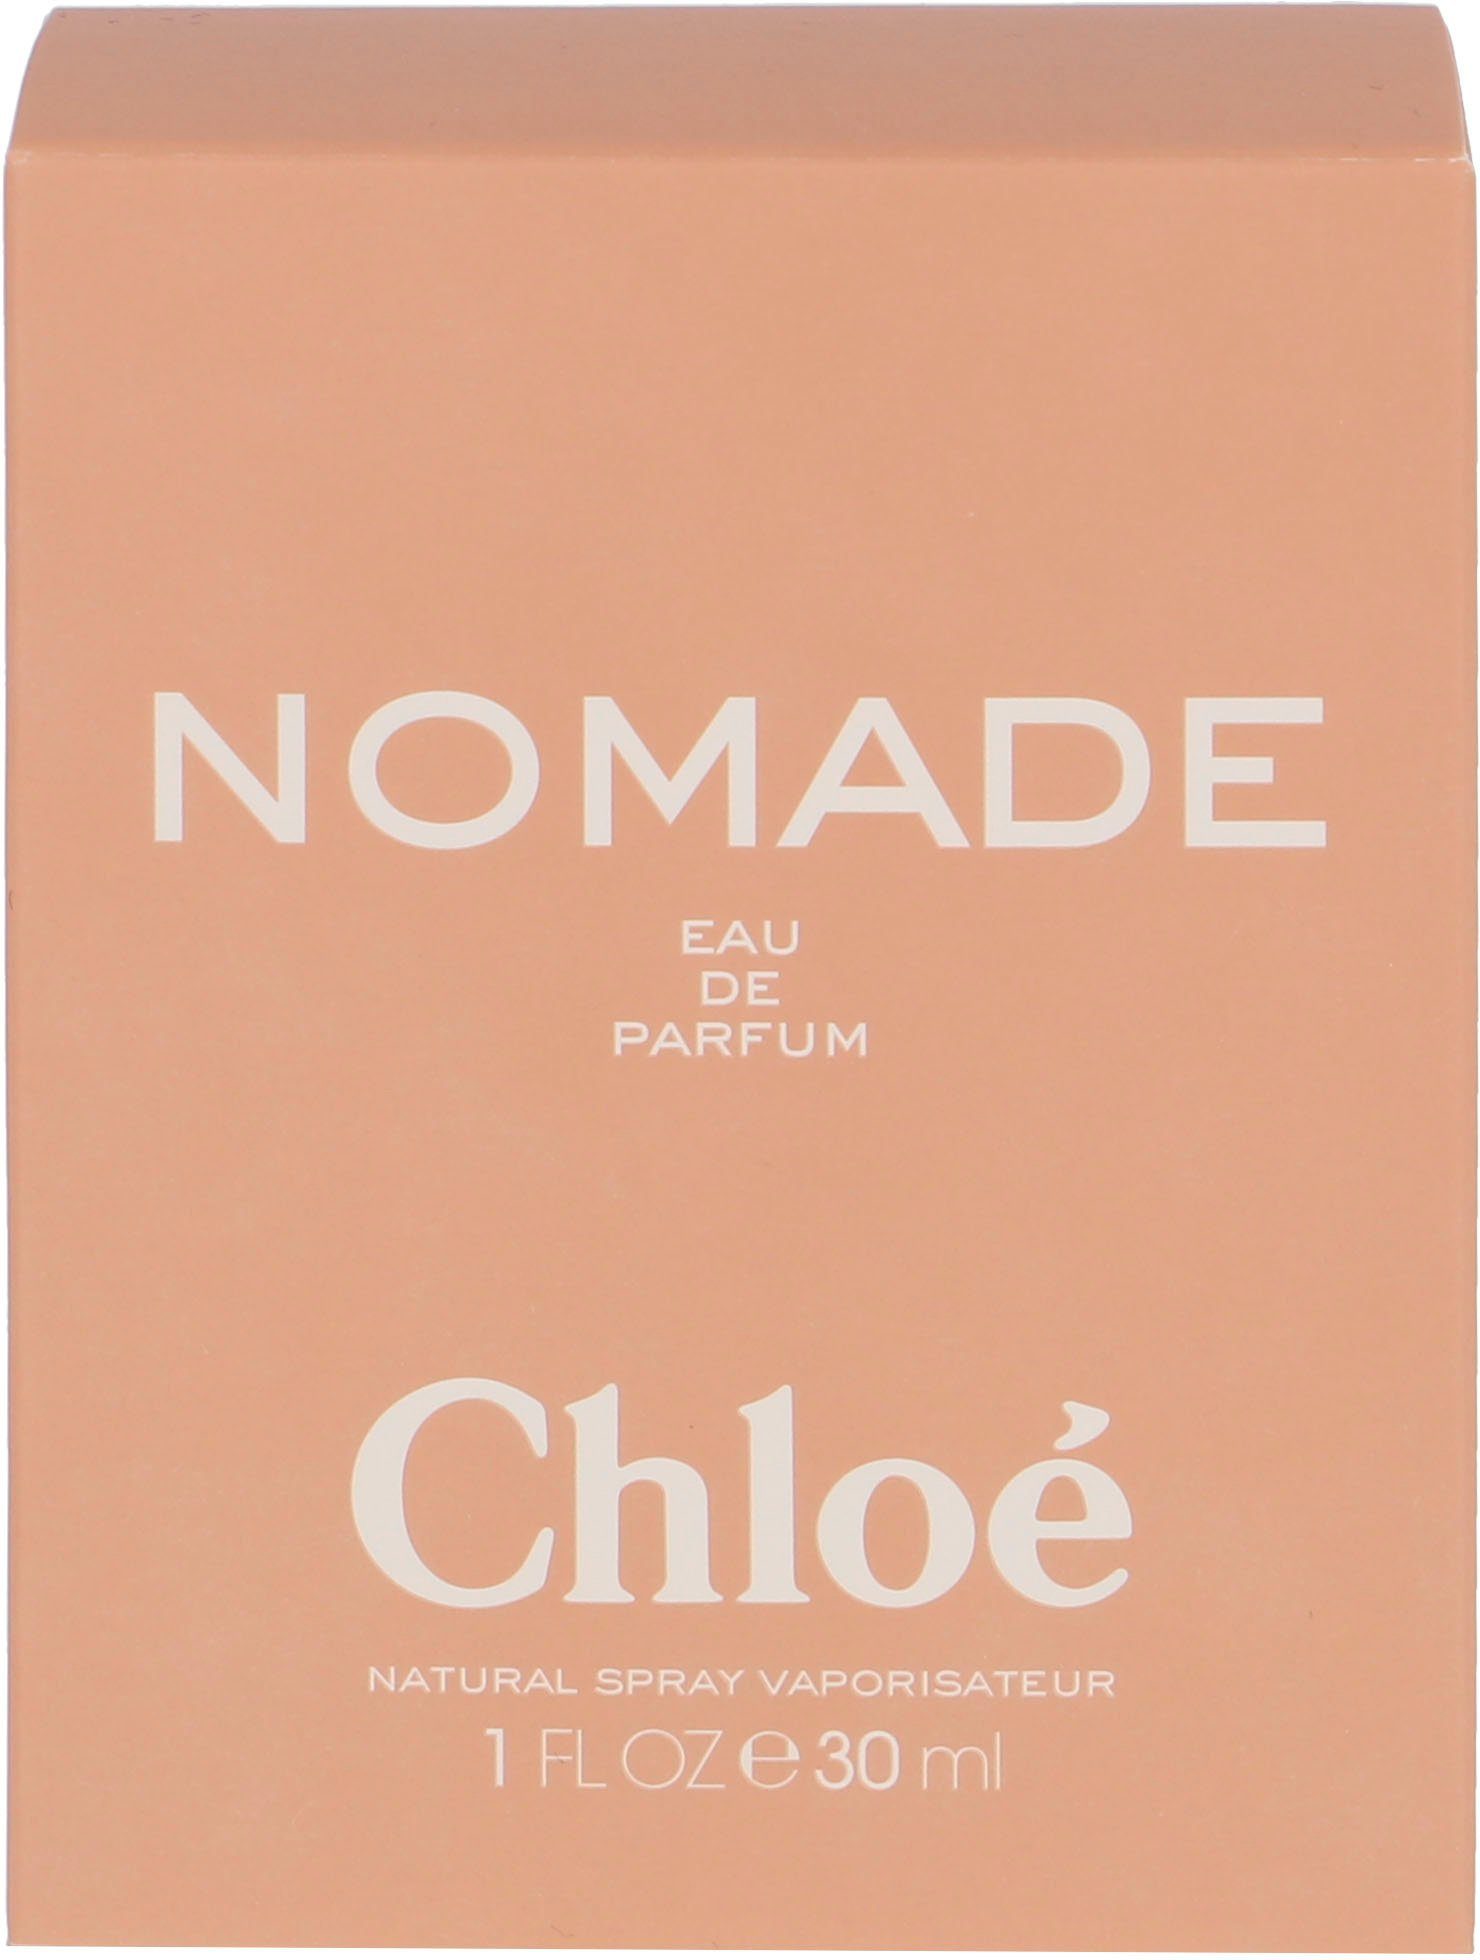 Chloé Eau de Parfum Nomade